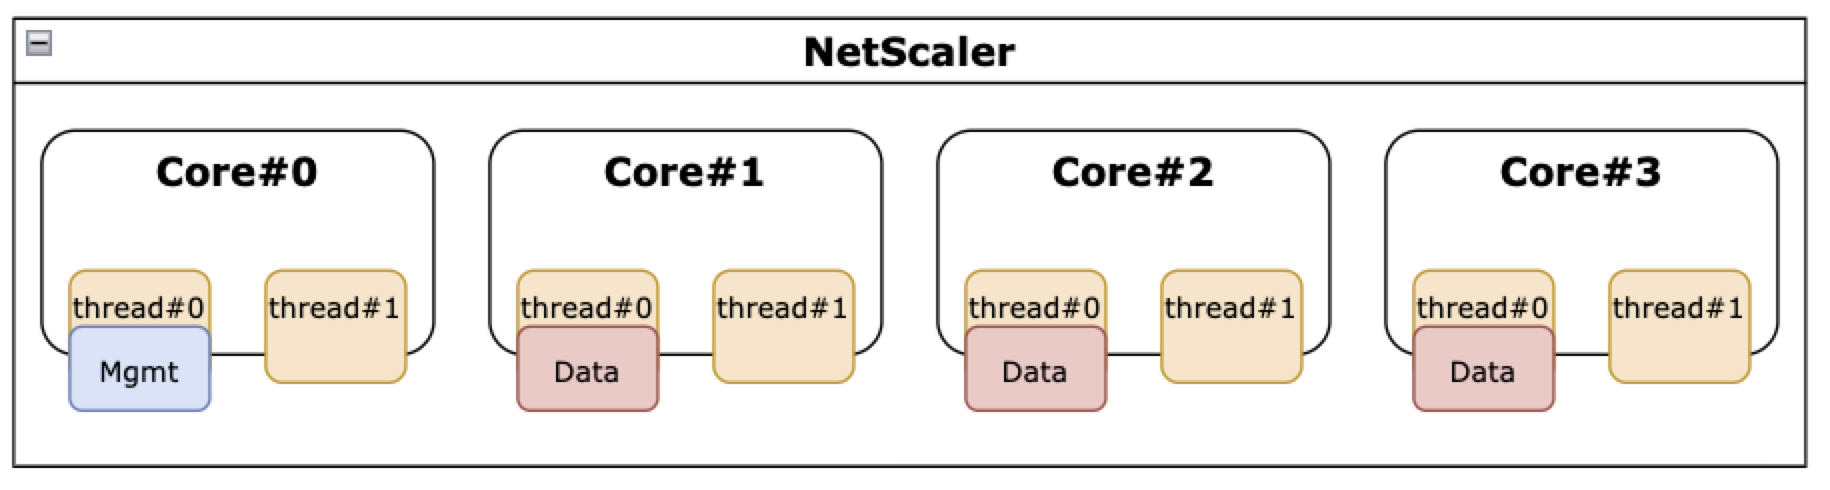 禁用了 SMT 功能的 NetScaler